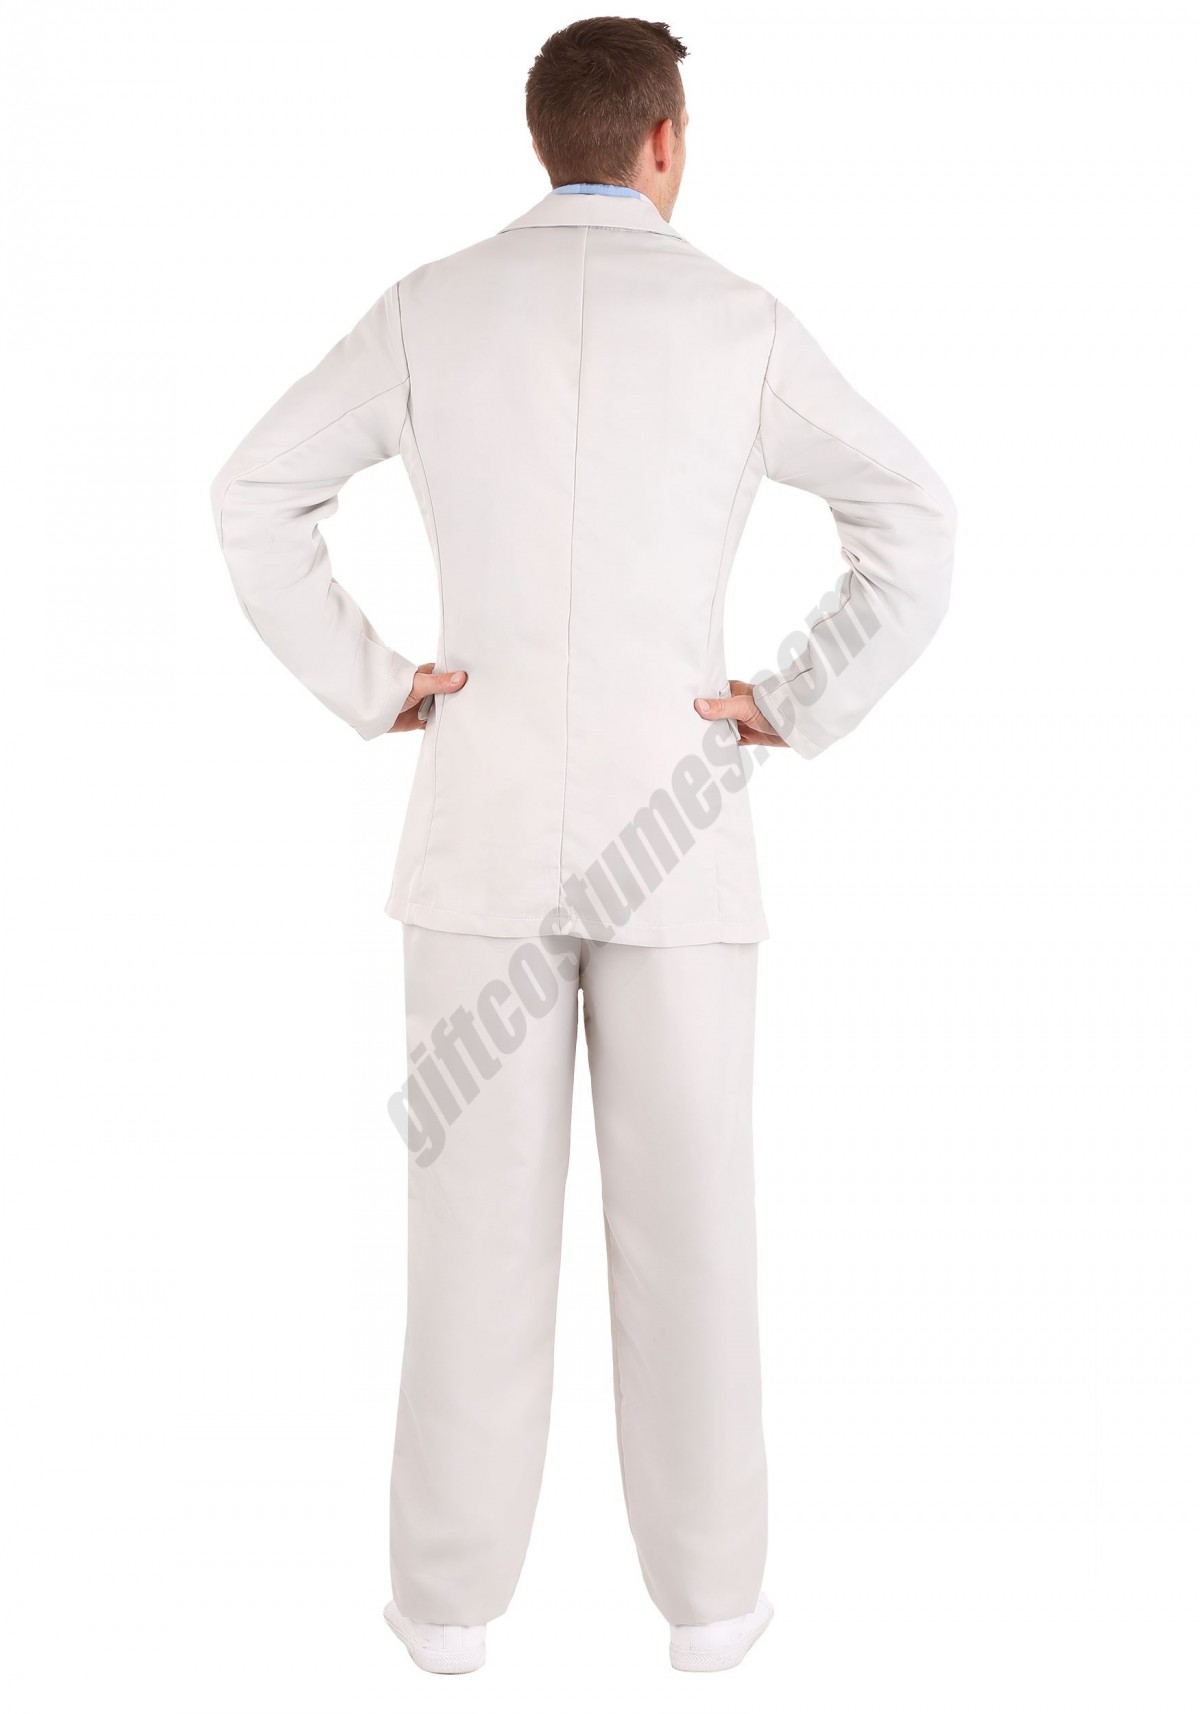 Forrest Gump Costume Suit Promotions - -1